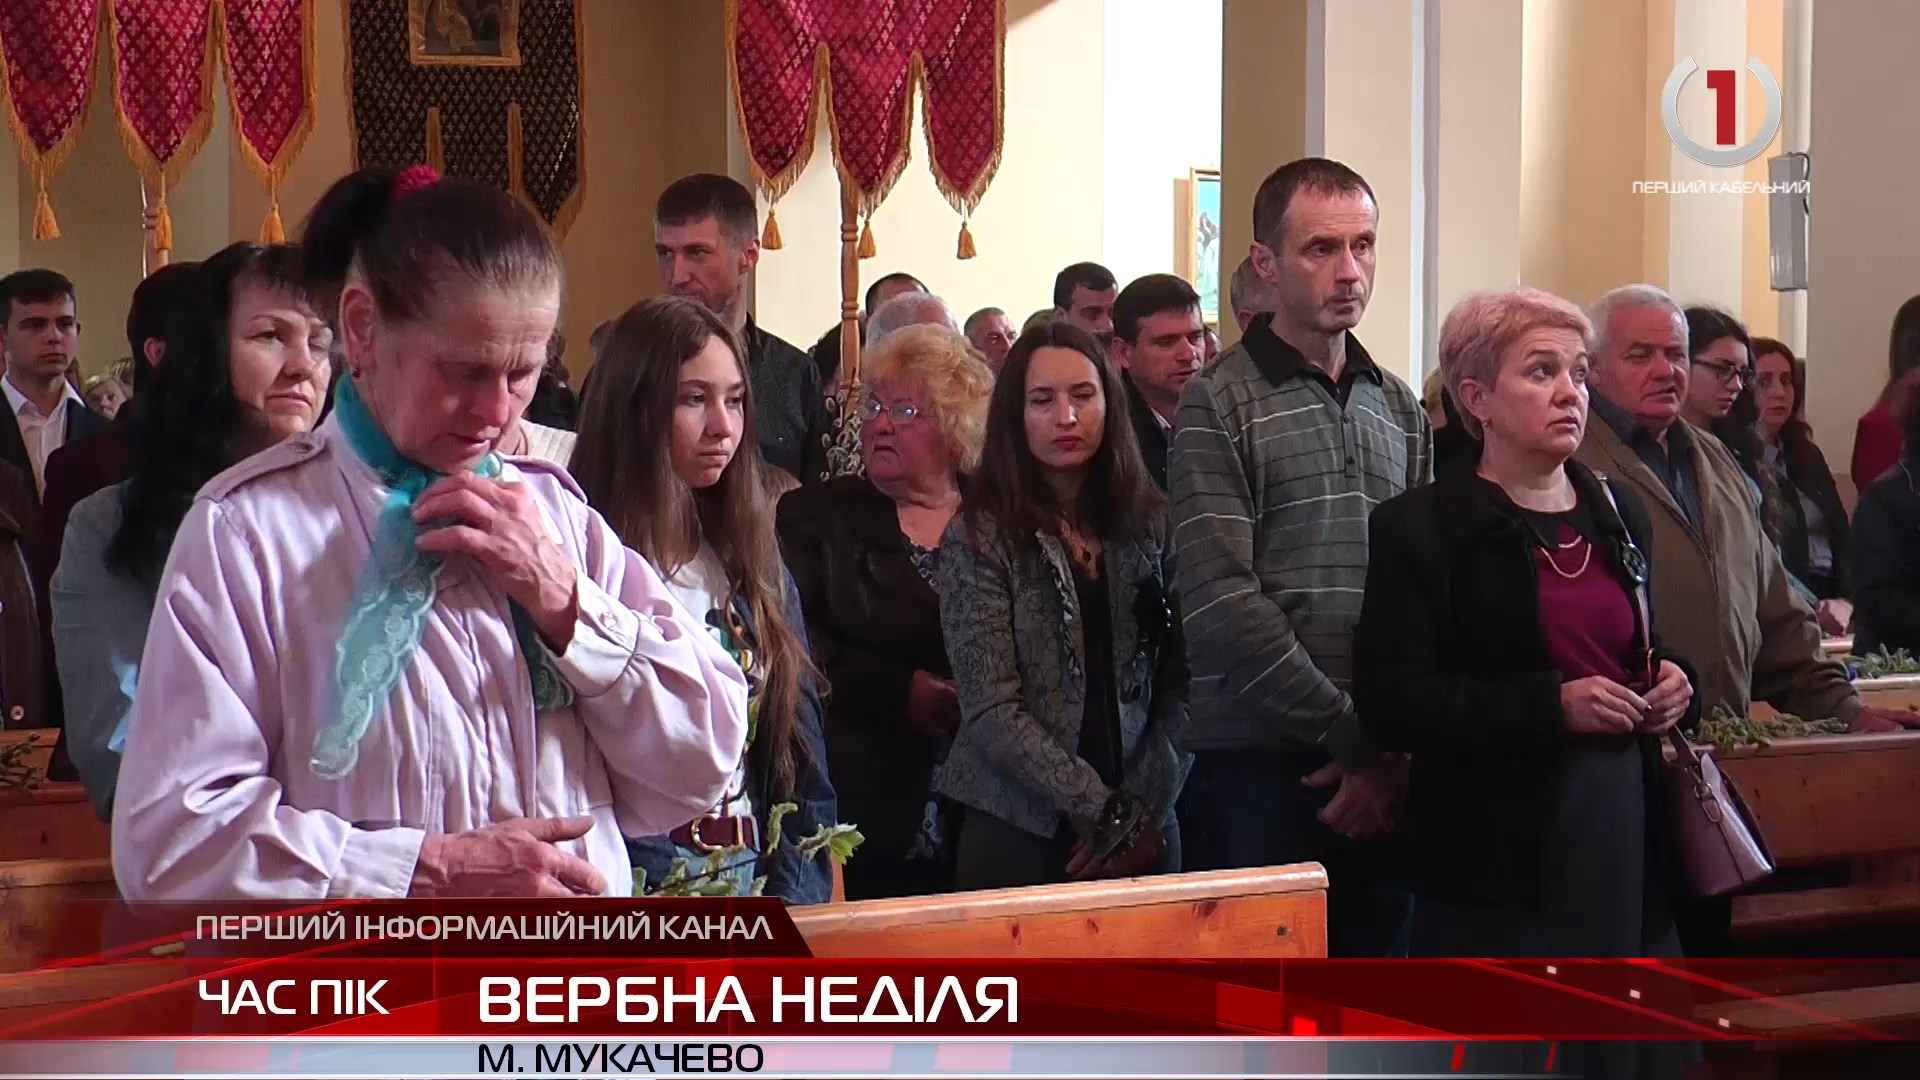 З дільниці одразу до храму: греко-католики у Мукачеві освятили вербу (ВІДЕО)